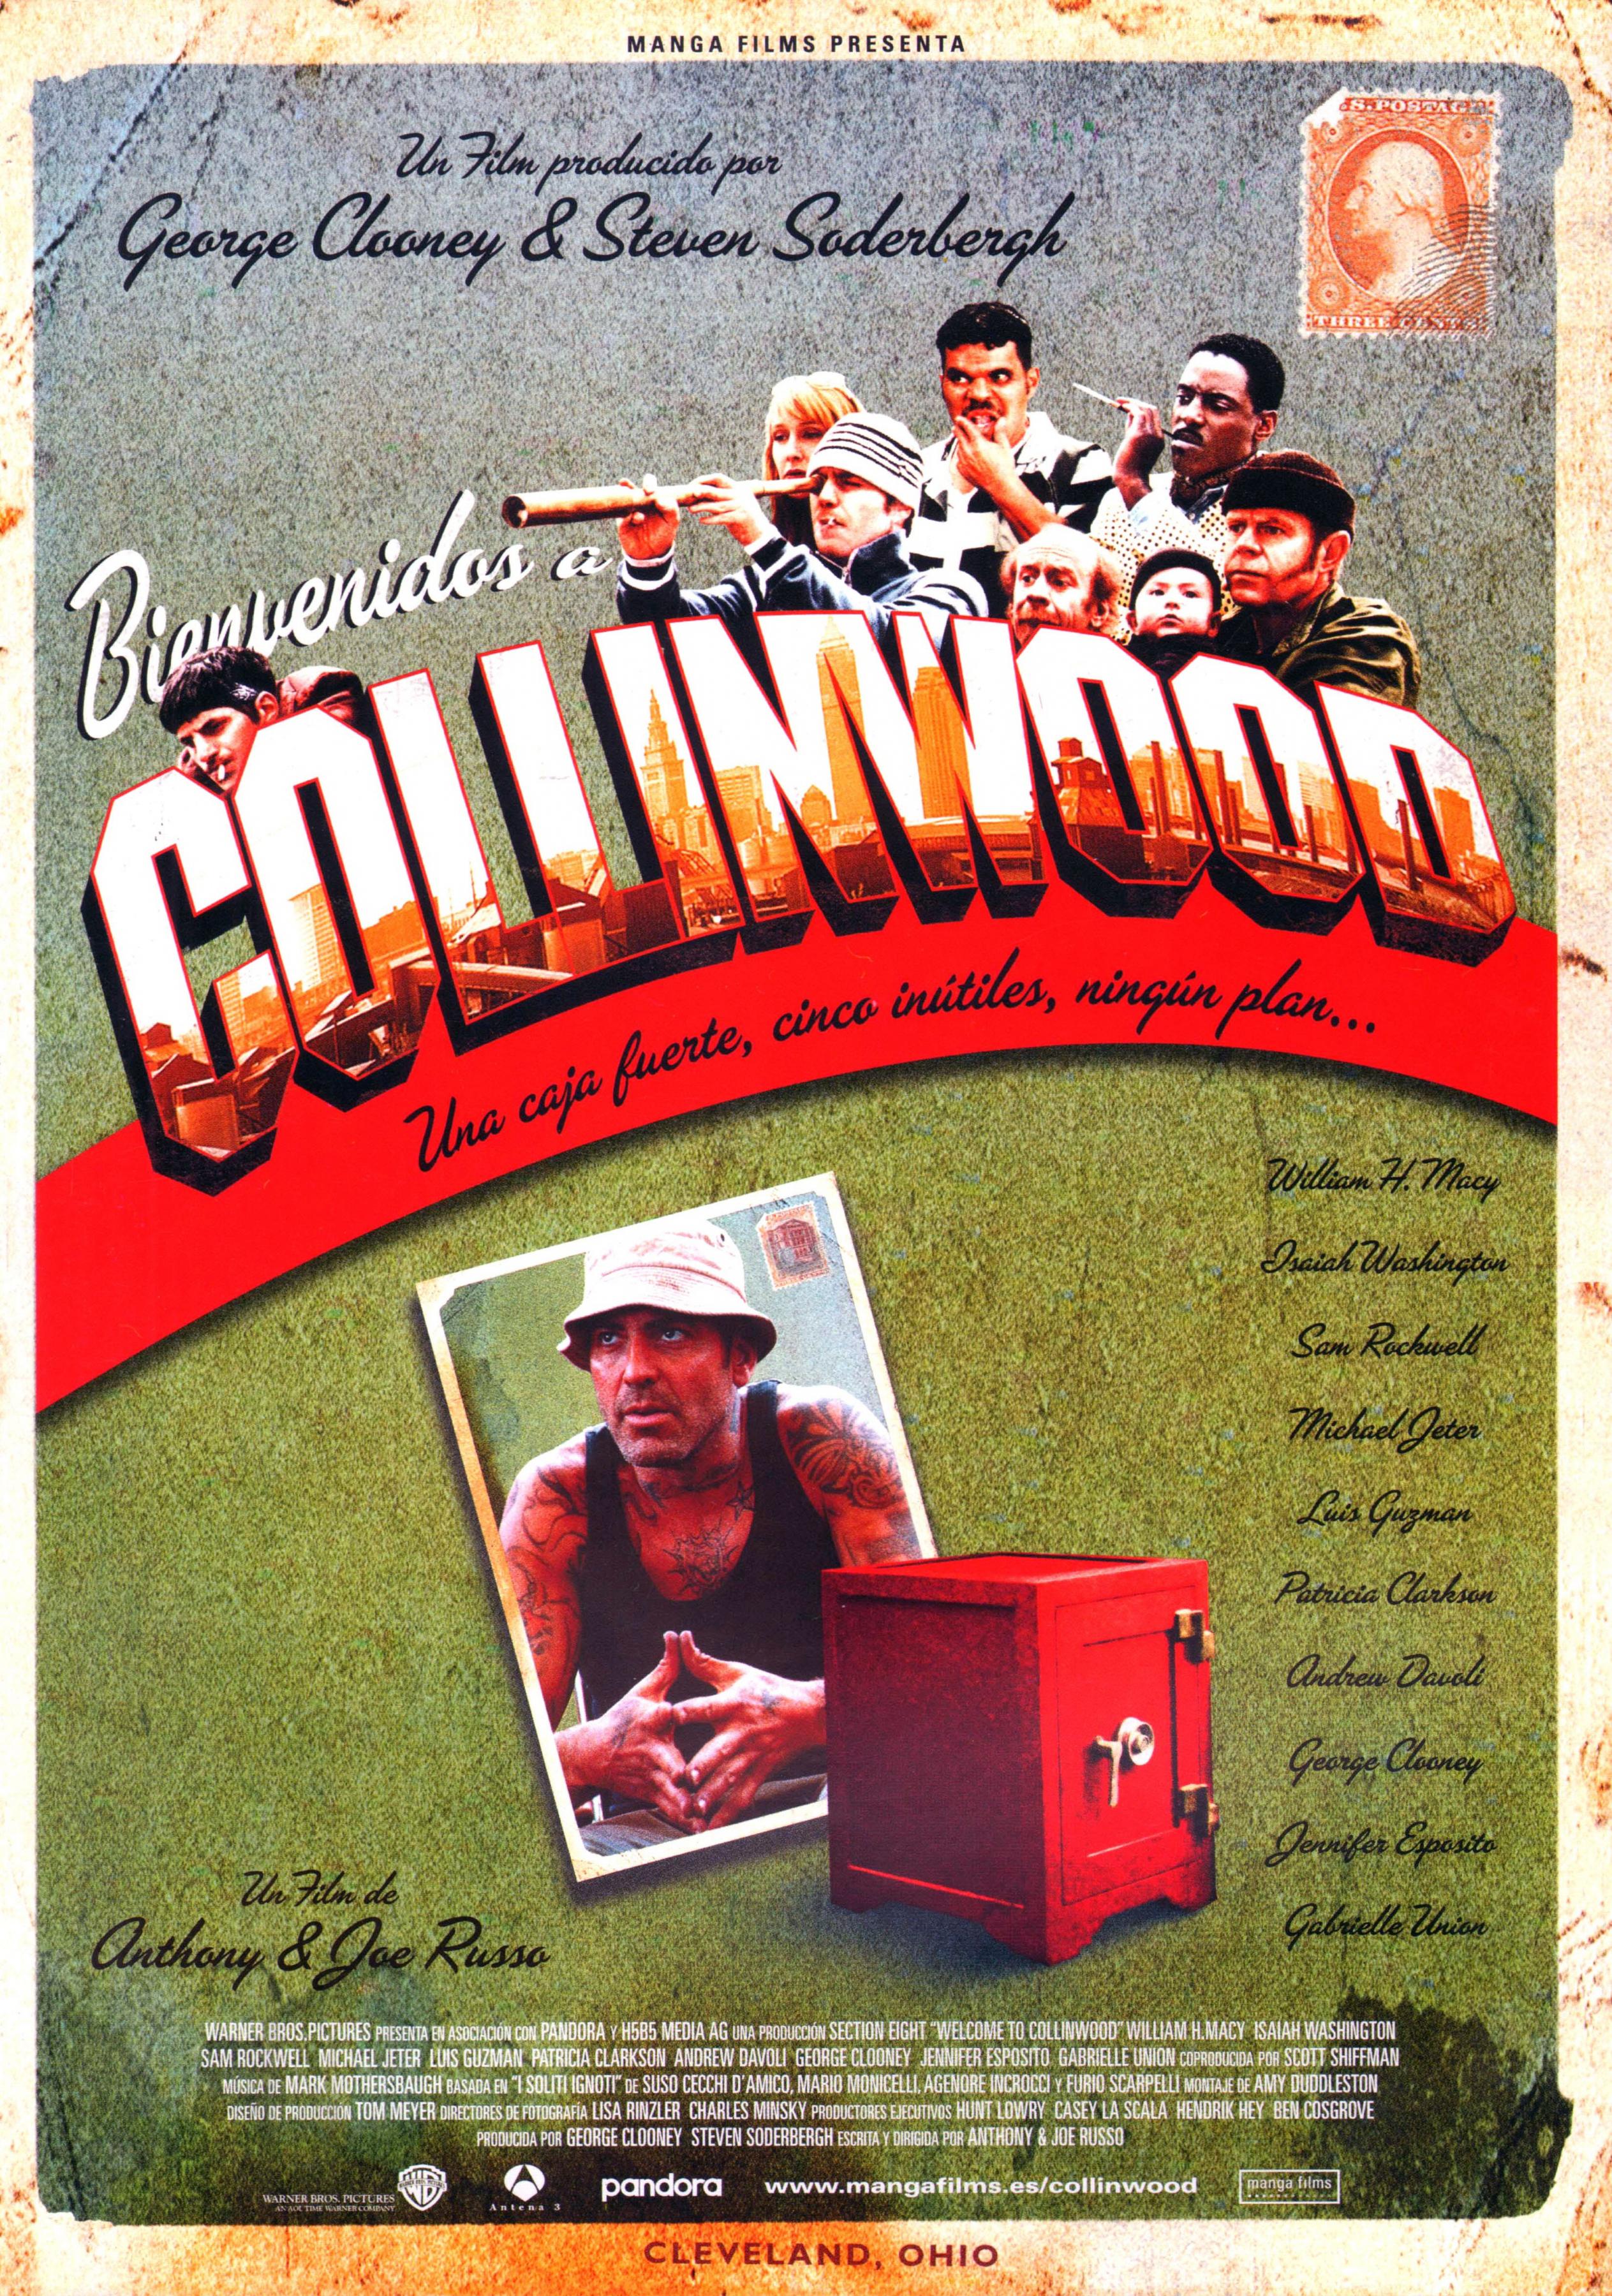 Постер фильма Добро пожаловать в Коллинвуд | Welcome to Collinwood